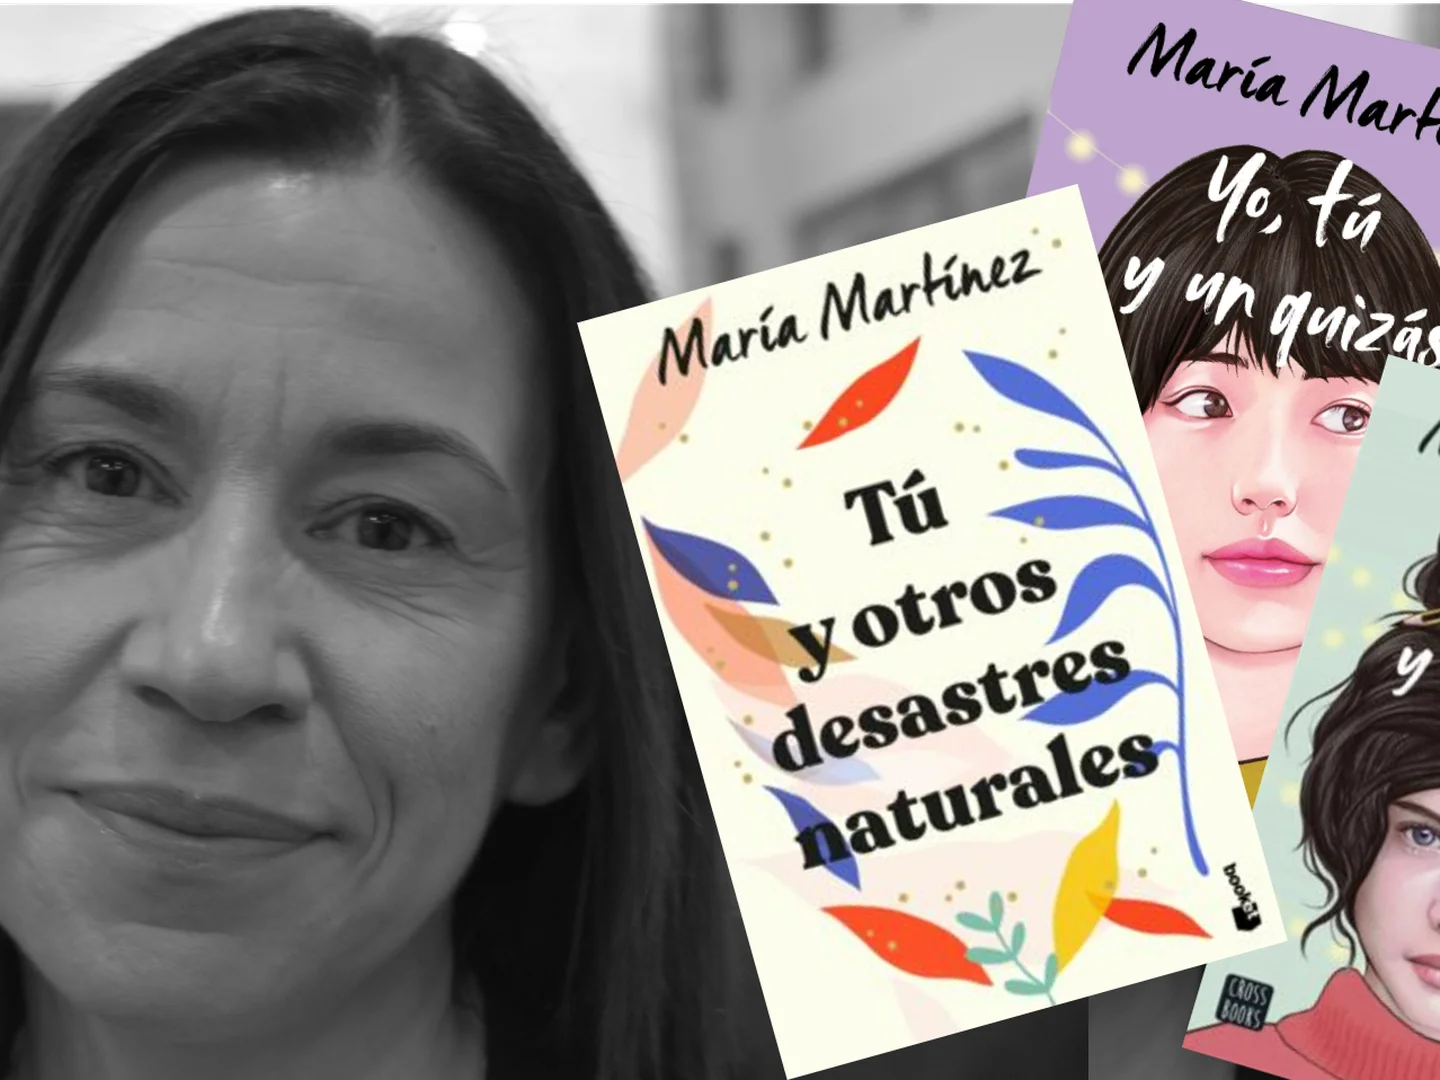 Mejor Libro De Maria Martinez